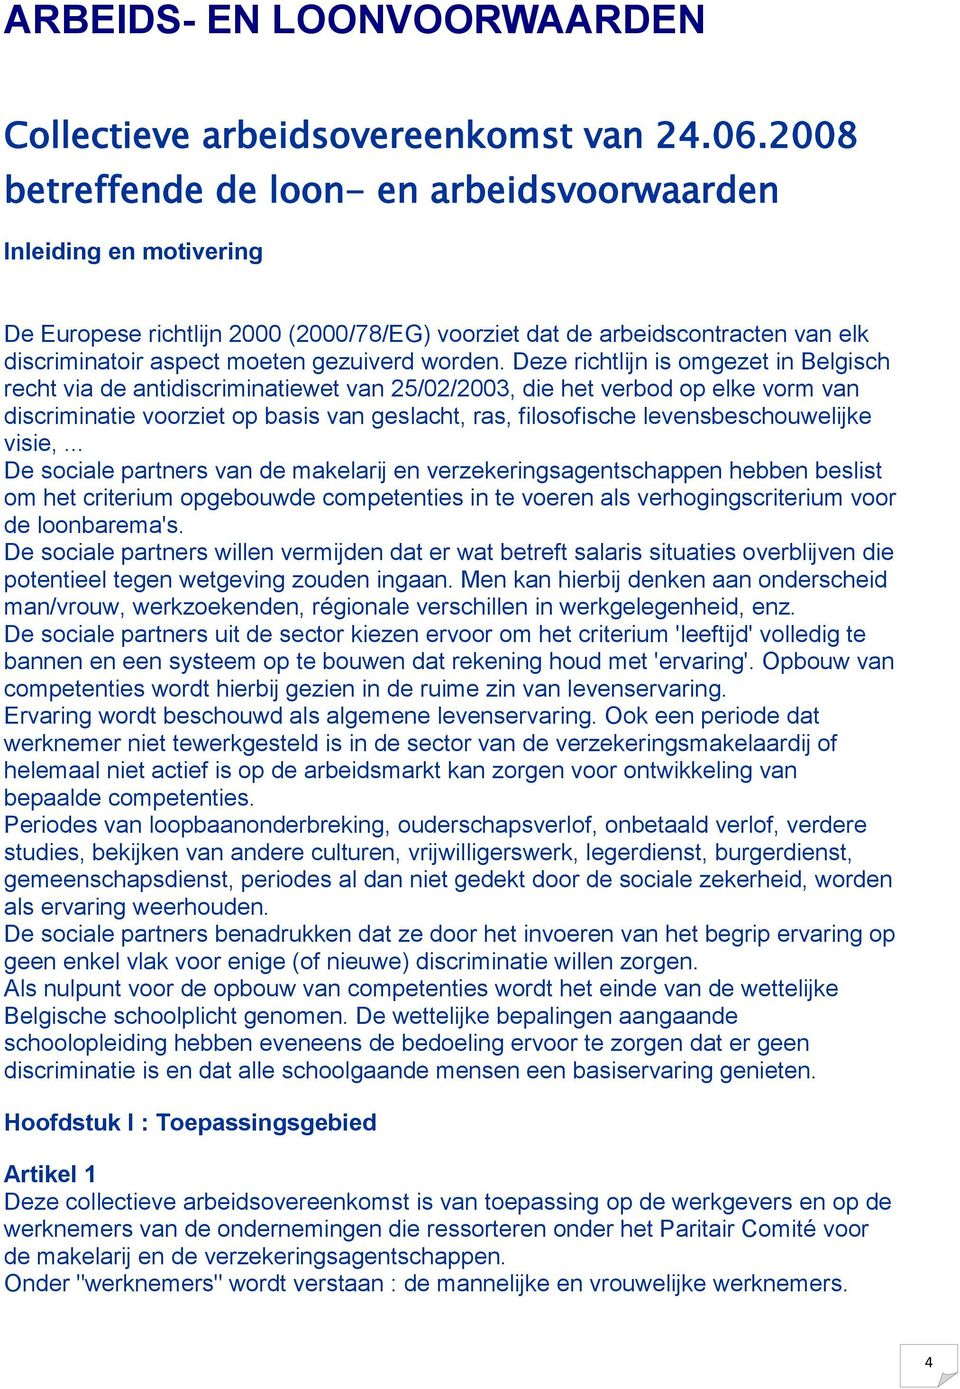 Deze richtlijn is omgezet in Belgisch recht via de antidiscriminatiewet van 25/02/2003, die het verbod op elke vorm van discriminatie voorziet op basis van geslacht, ras, filosofische